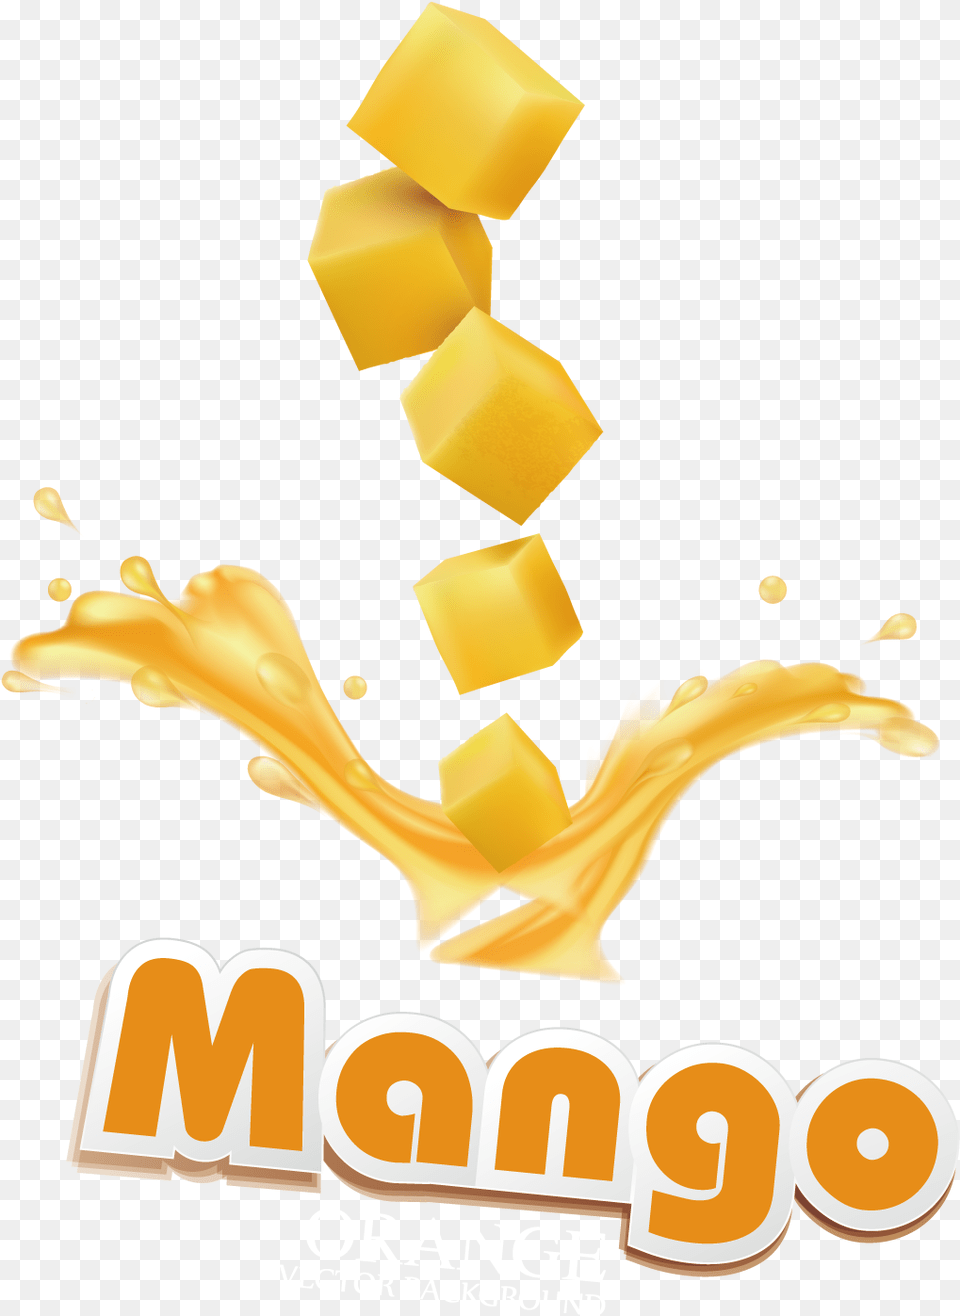 Mango Background Mango Poster, Advertisement, Smoke Pipe, Food, Logo Free Transparent Png